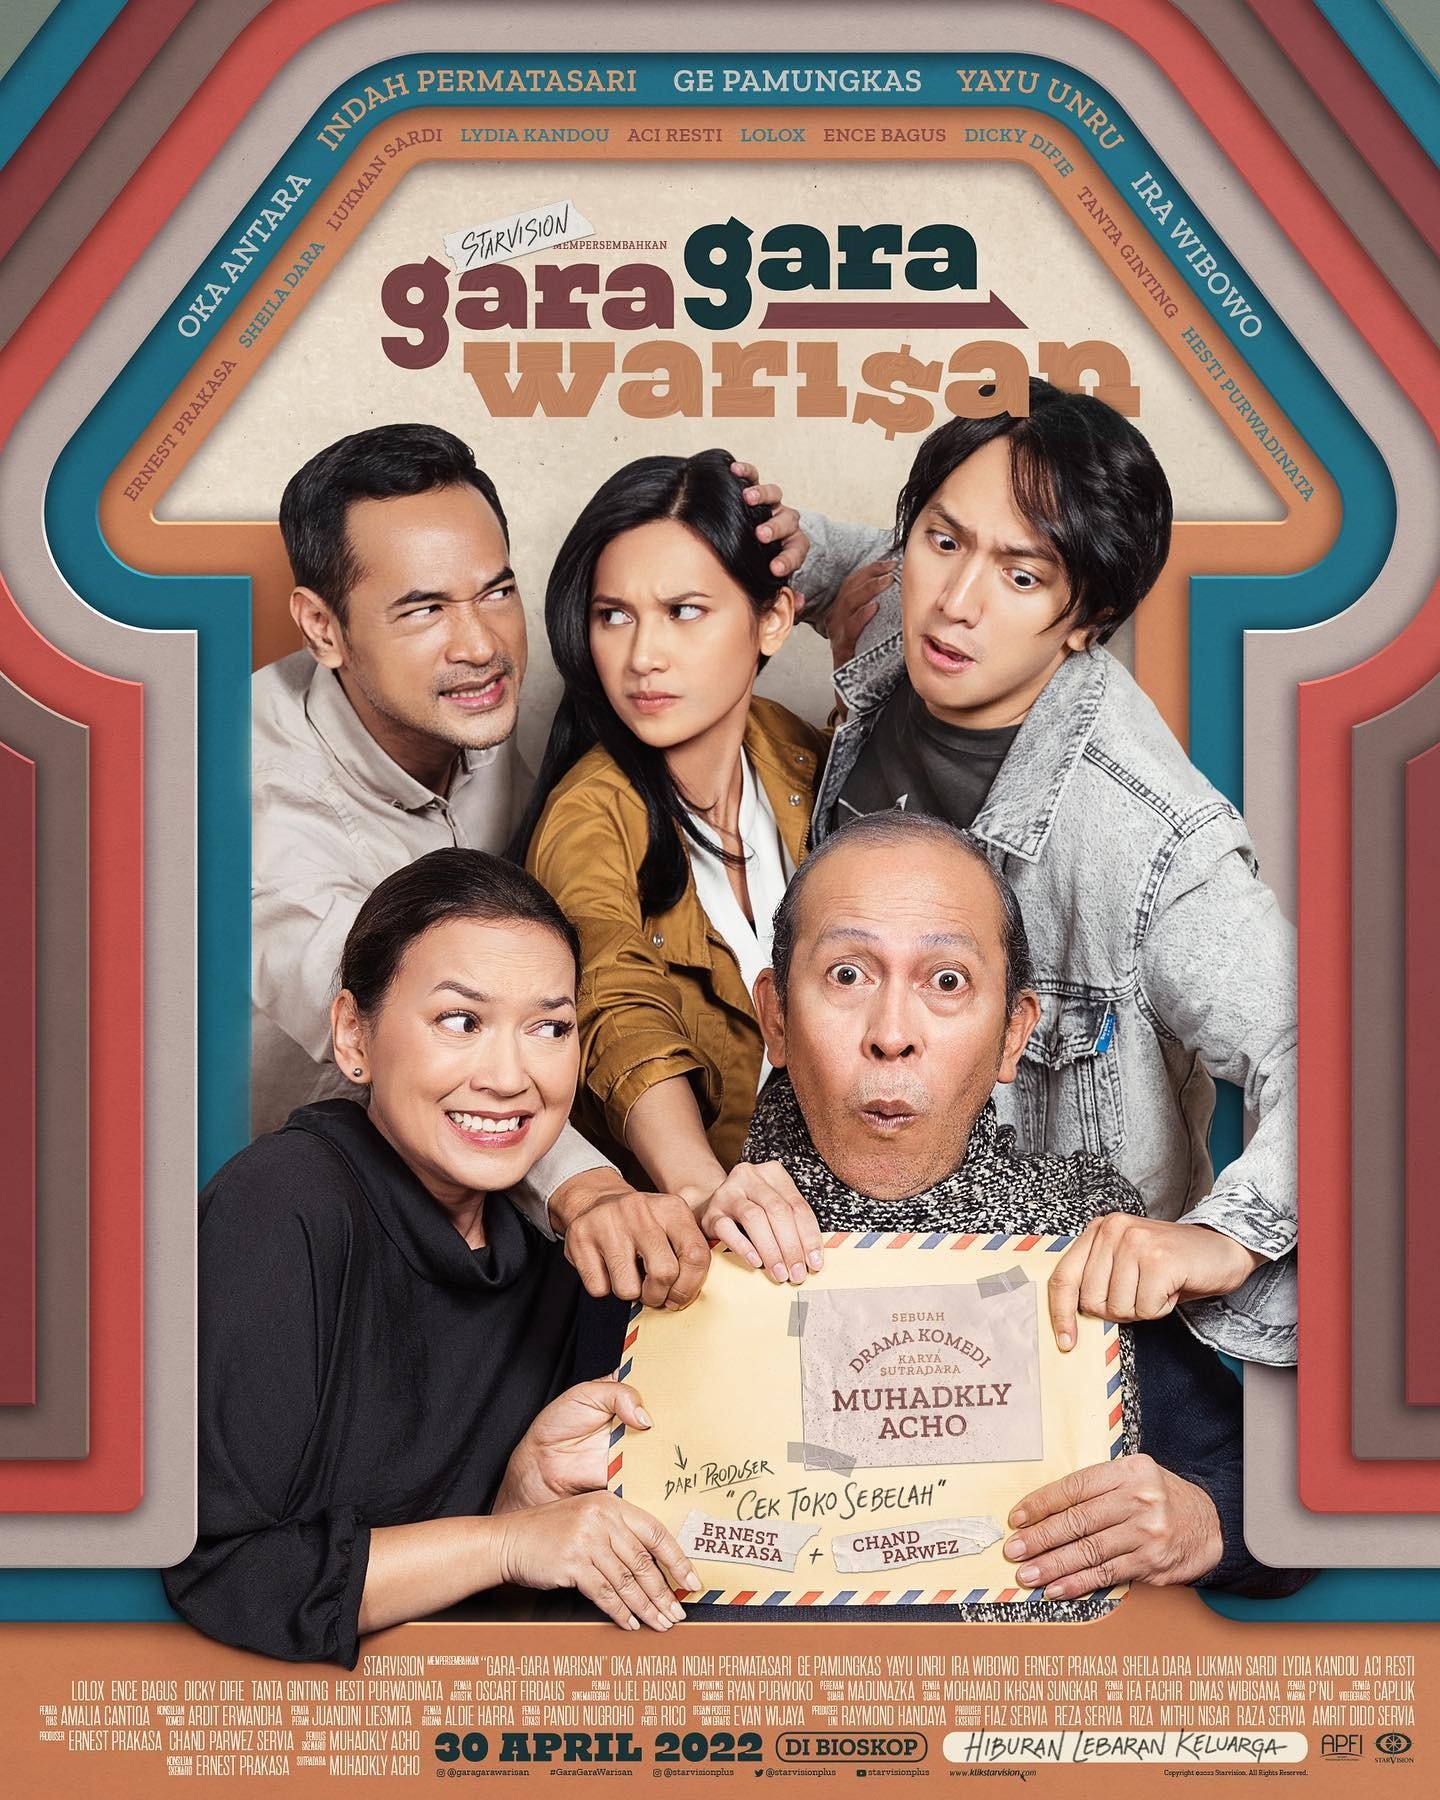 Gara-Gara Warisan (2022)